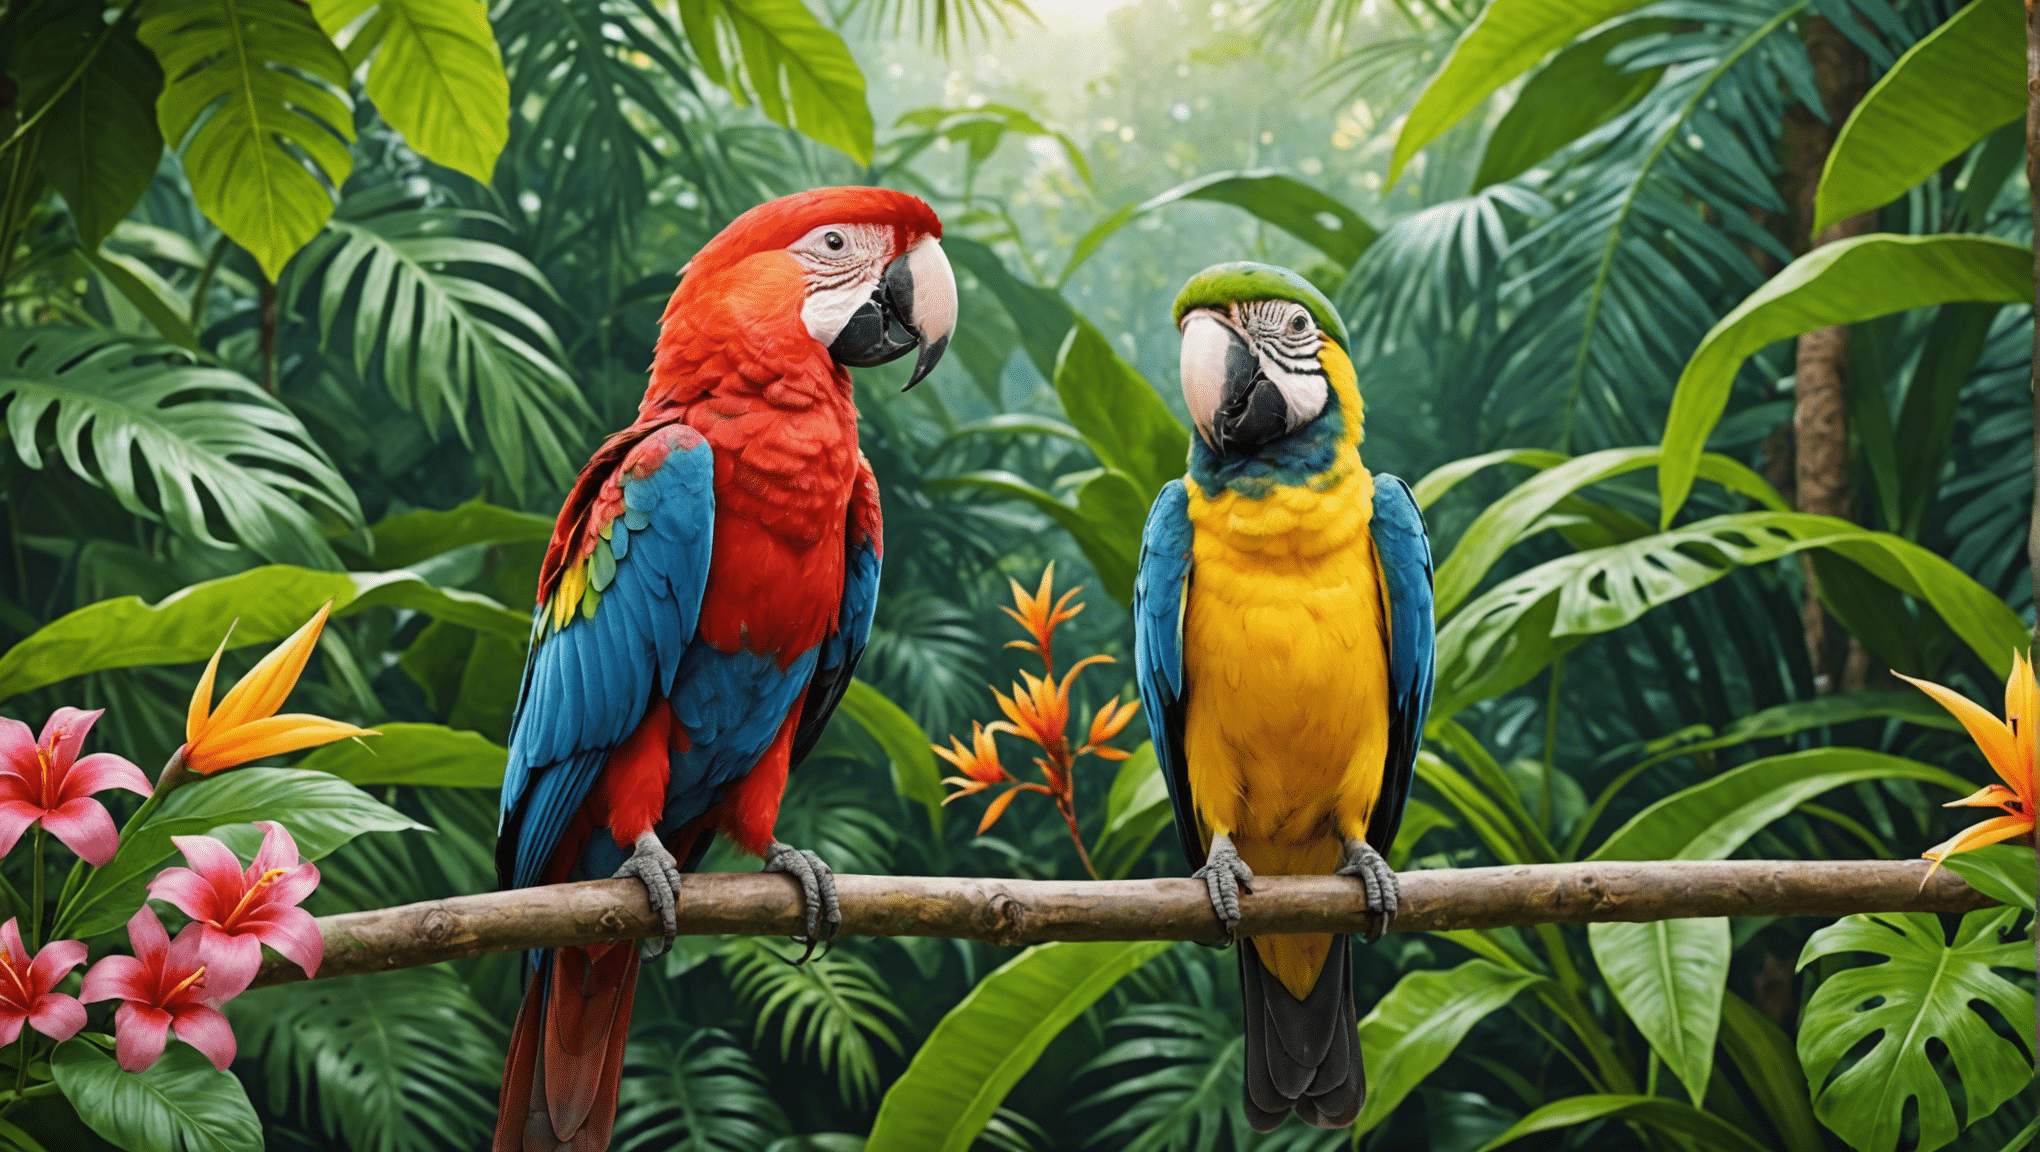 Entdecken Sie die bezaubernde Welt der tropischen Vögel mit unserer faszinierenden Sammlung von Artikeln und Bildern.